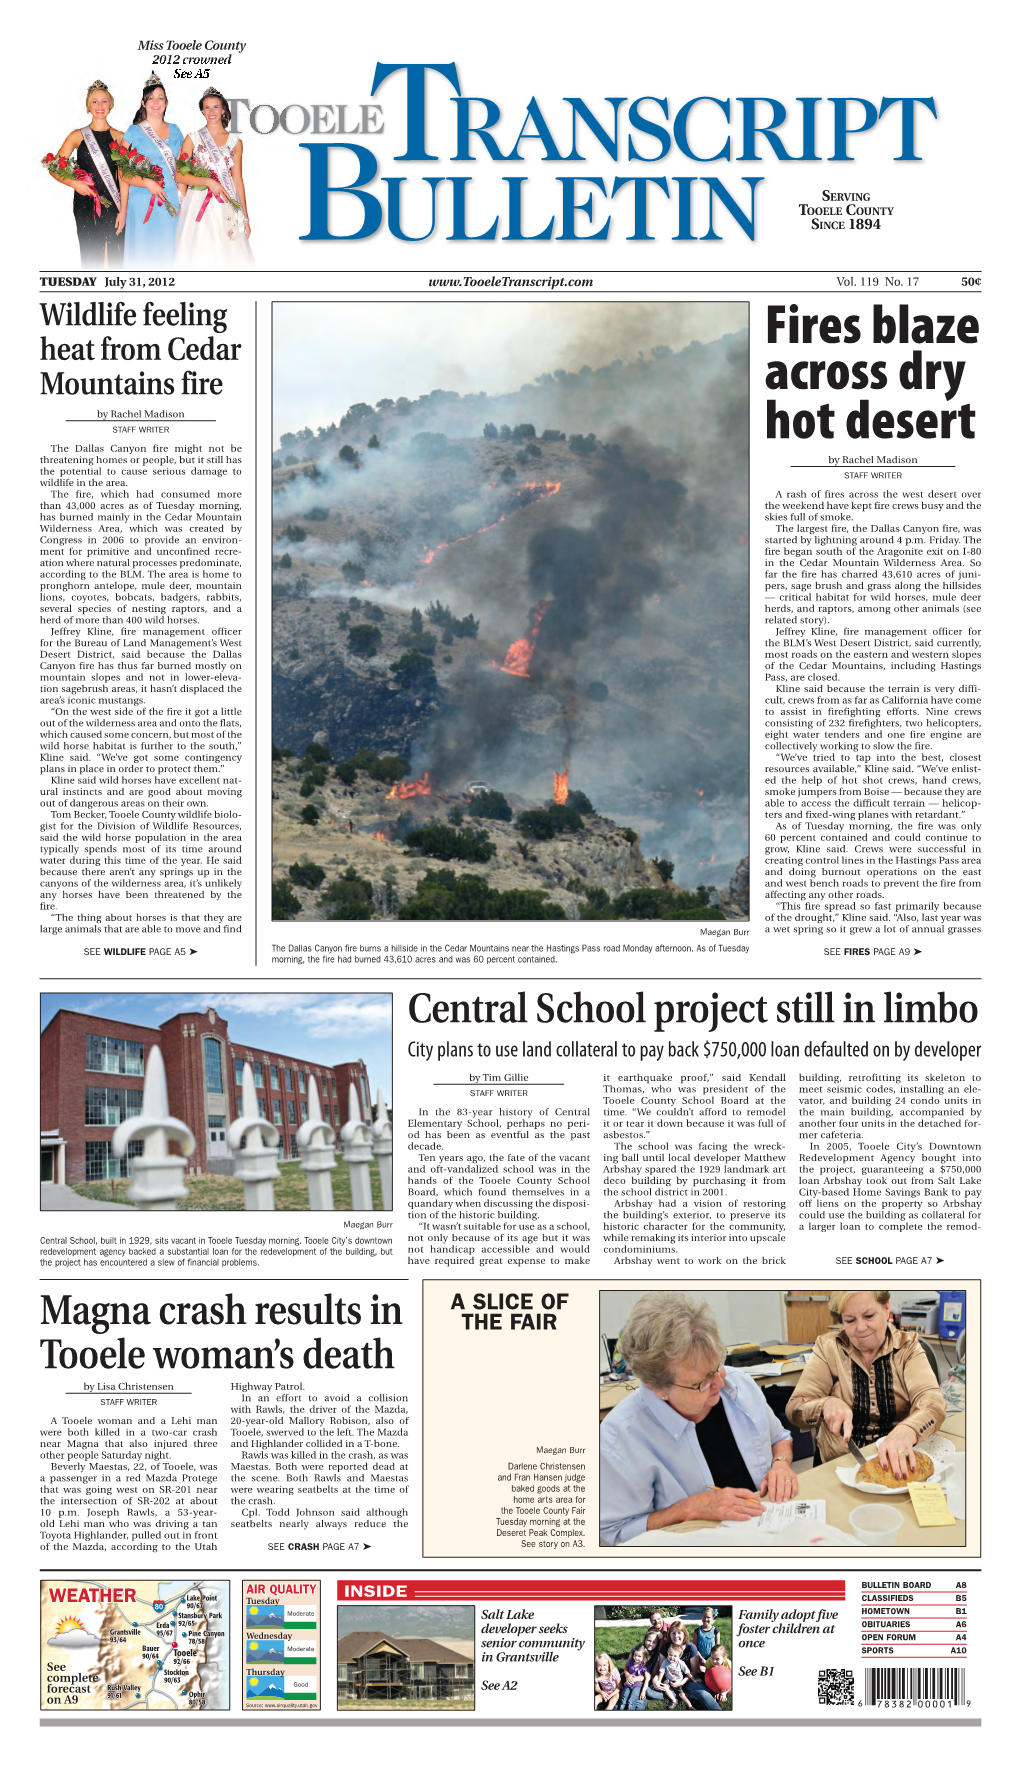 Fires Blaze Across Dry Hot Desert